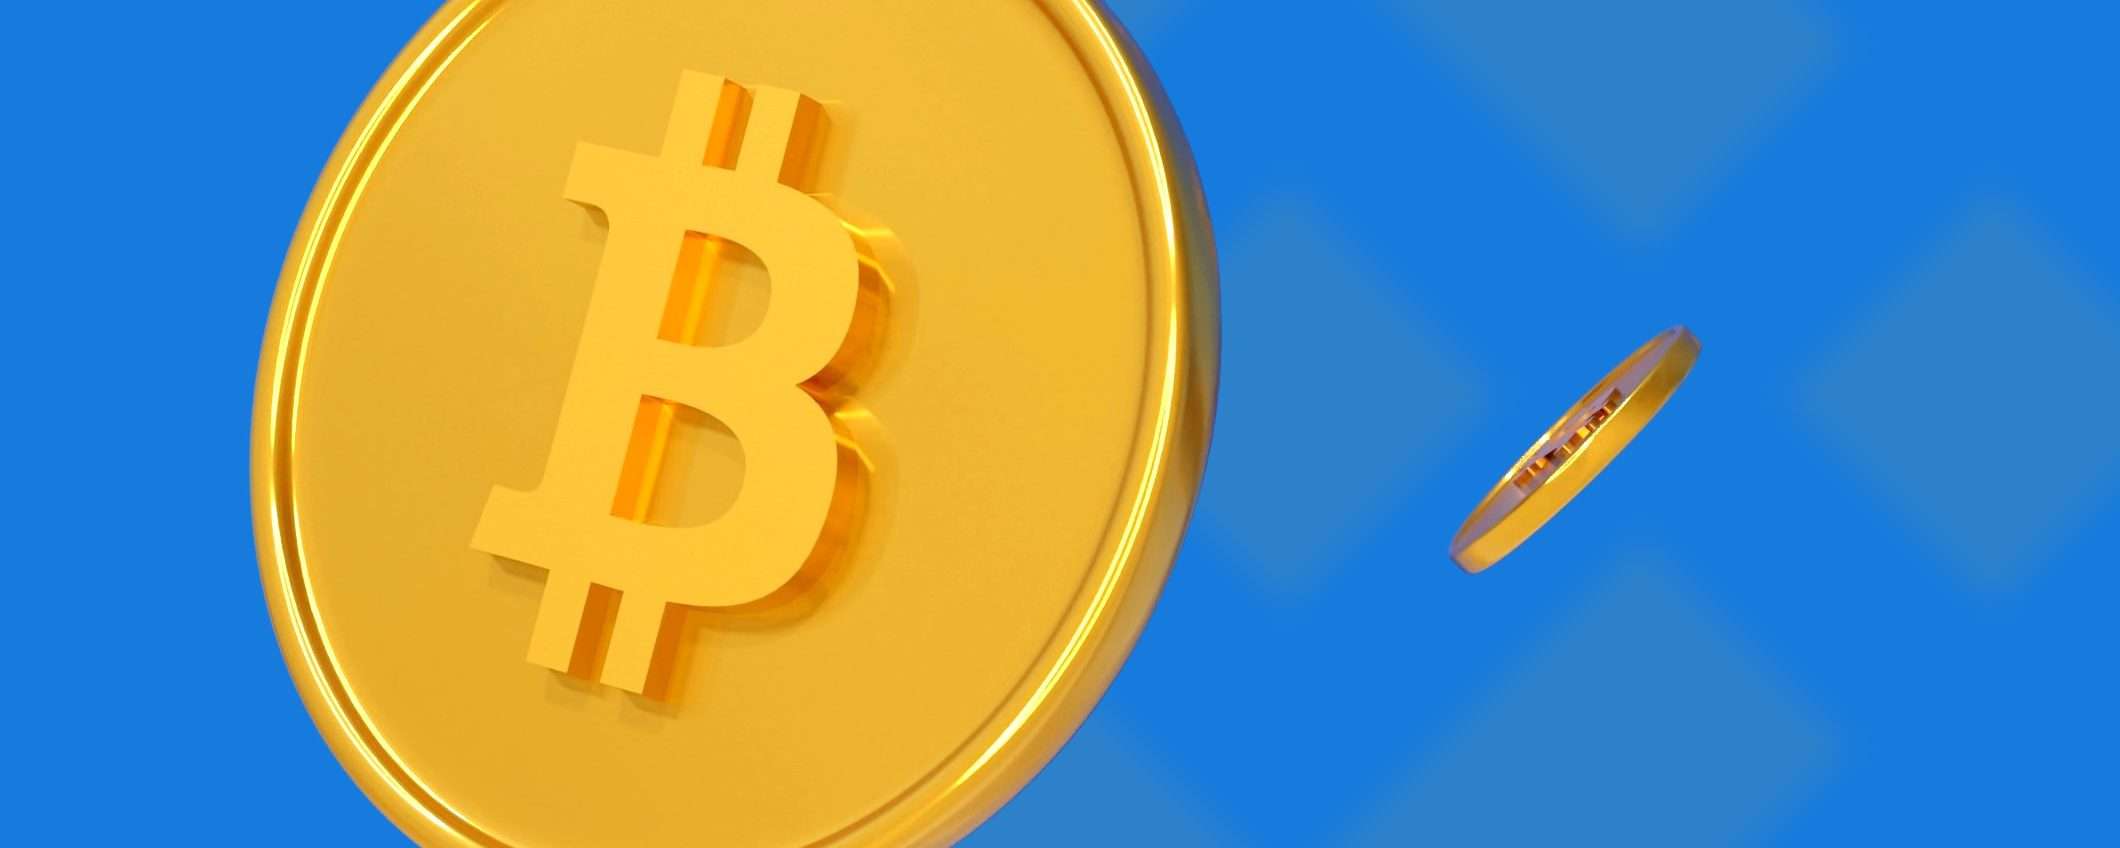 Bitcoin torna a correre: +10% nelle ultime 24 ore